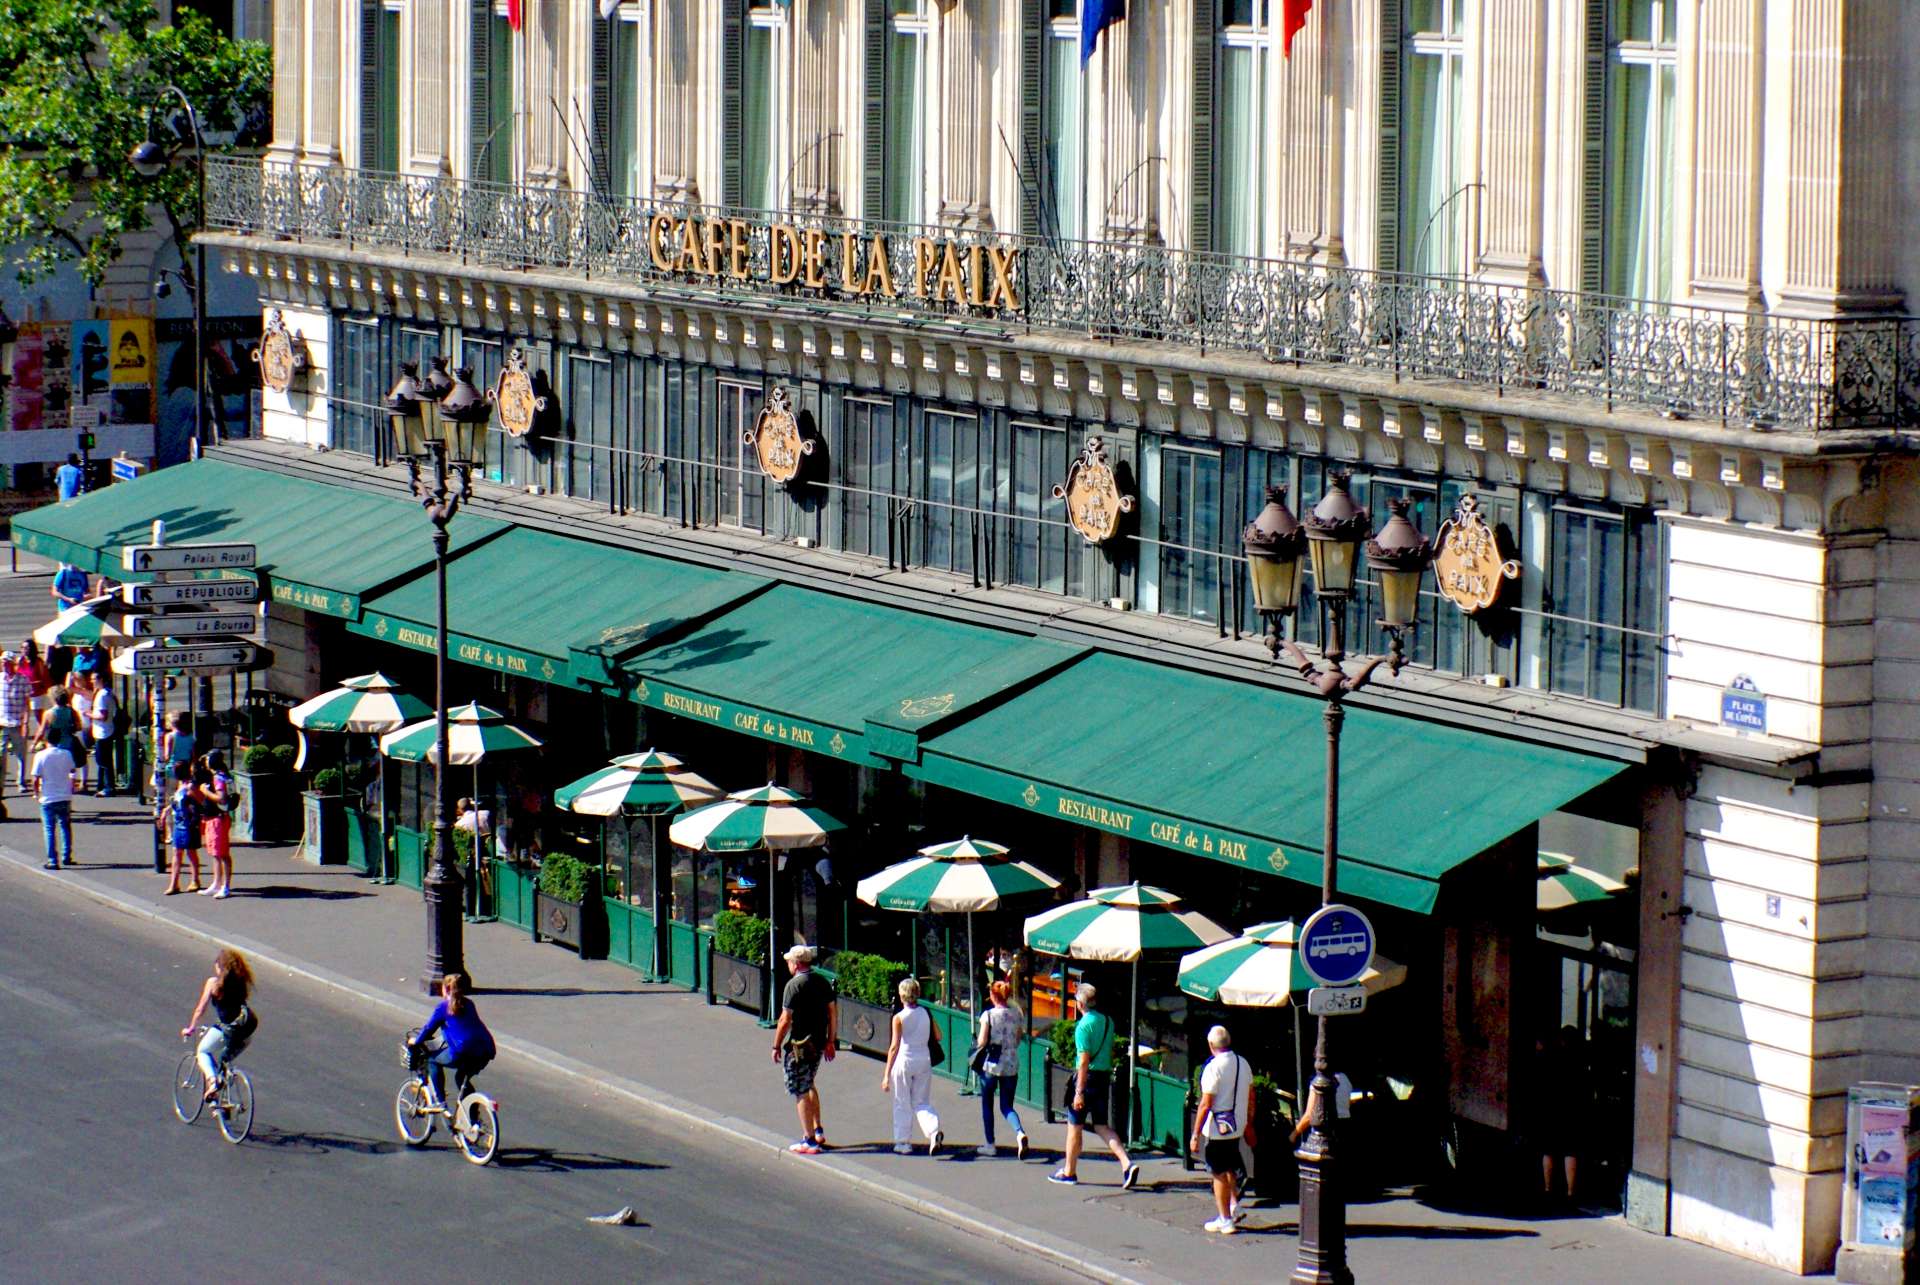 Haussmann's Paris Café de la Paix © French Moments